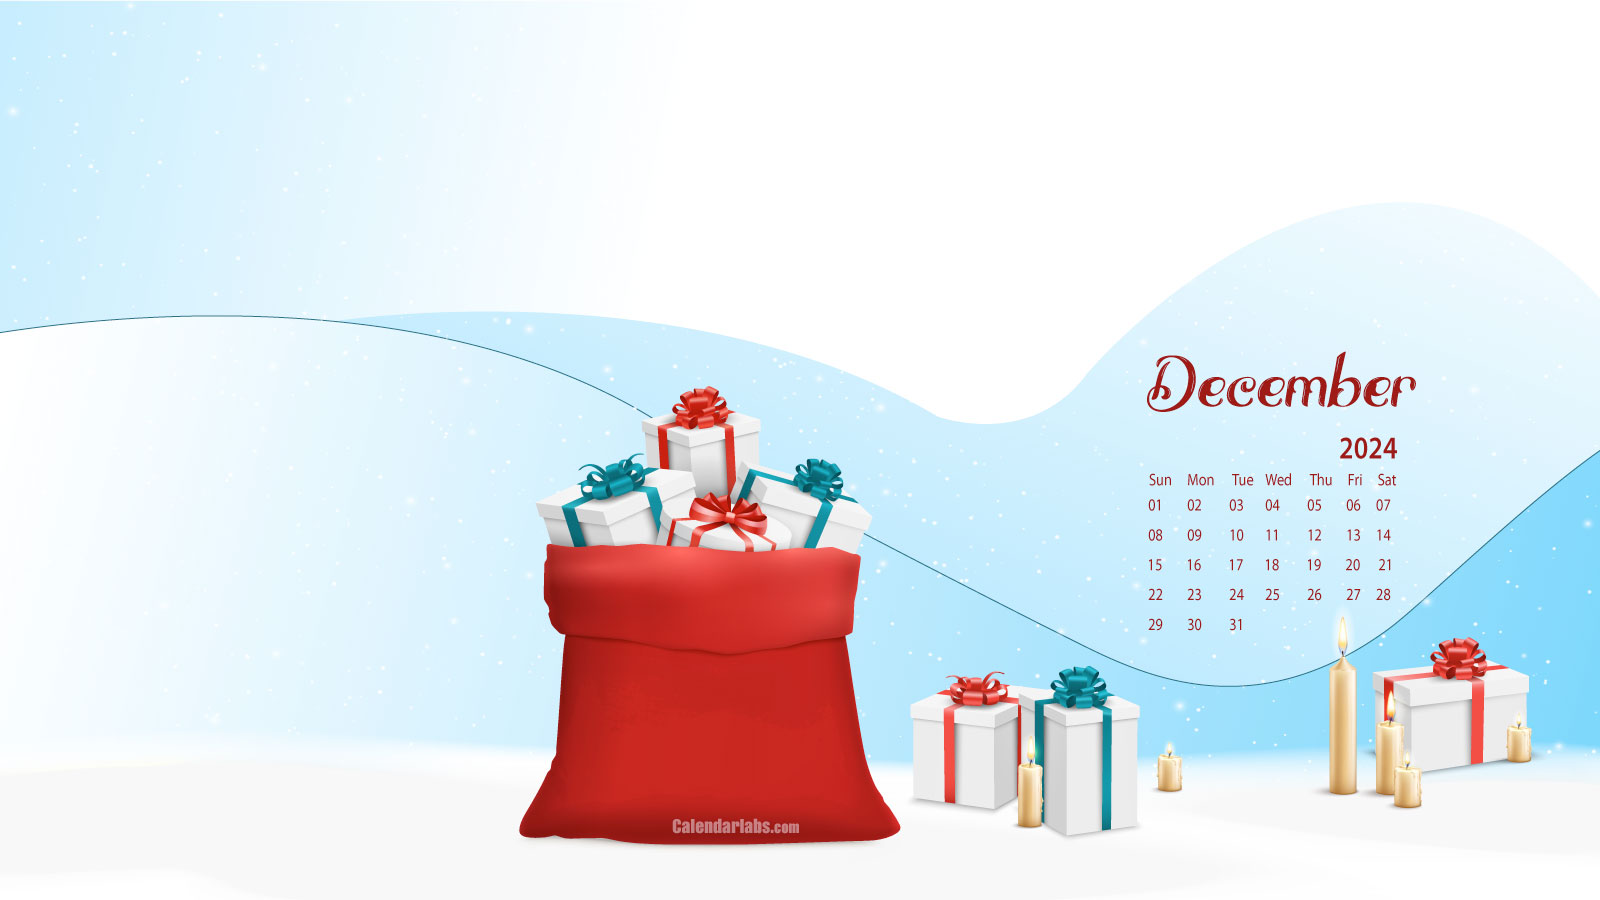 December 2024 Calendar Wallpaper Designs Disney World Crowd Calendar 2024